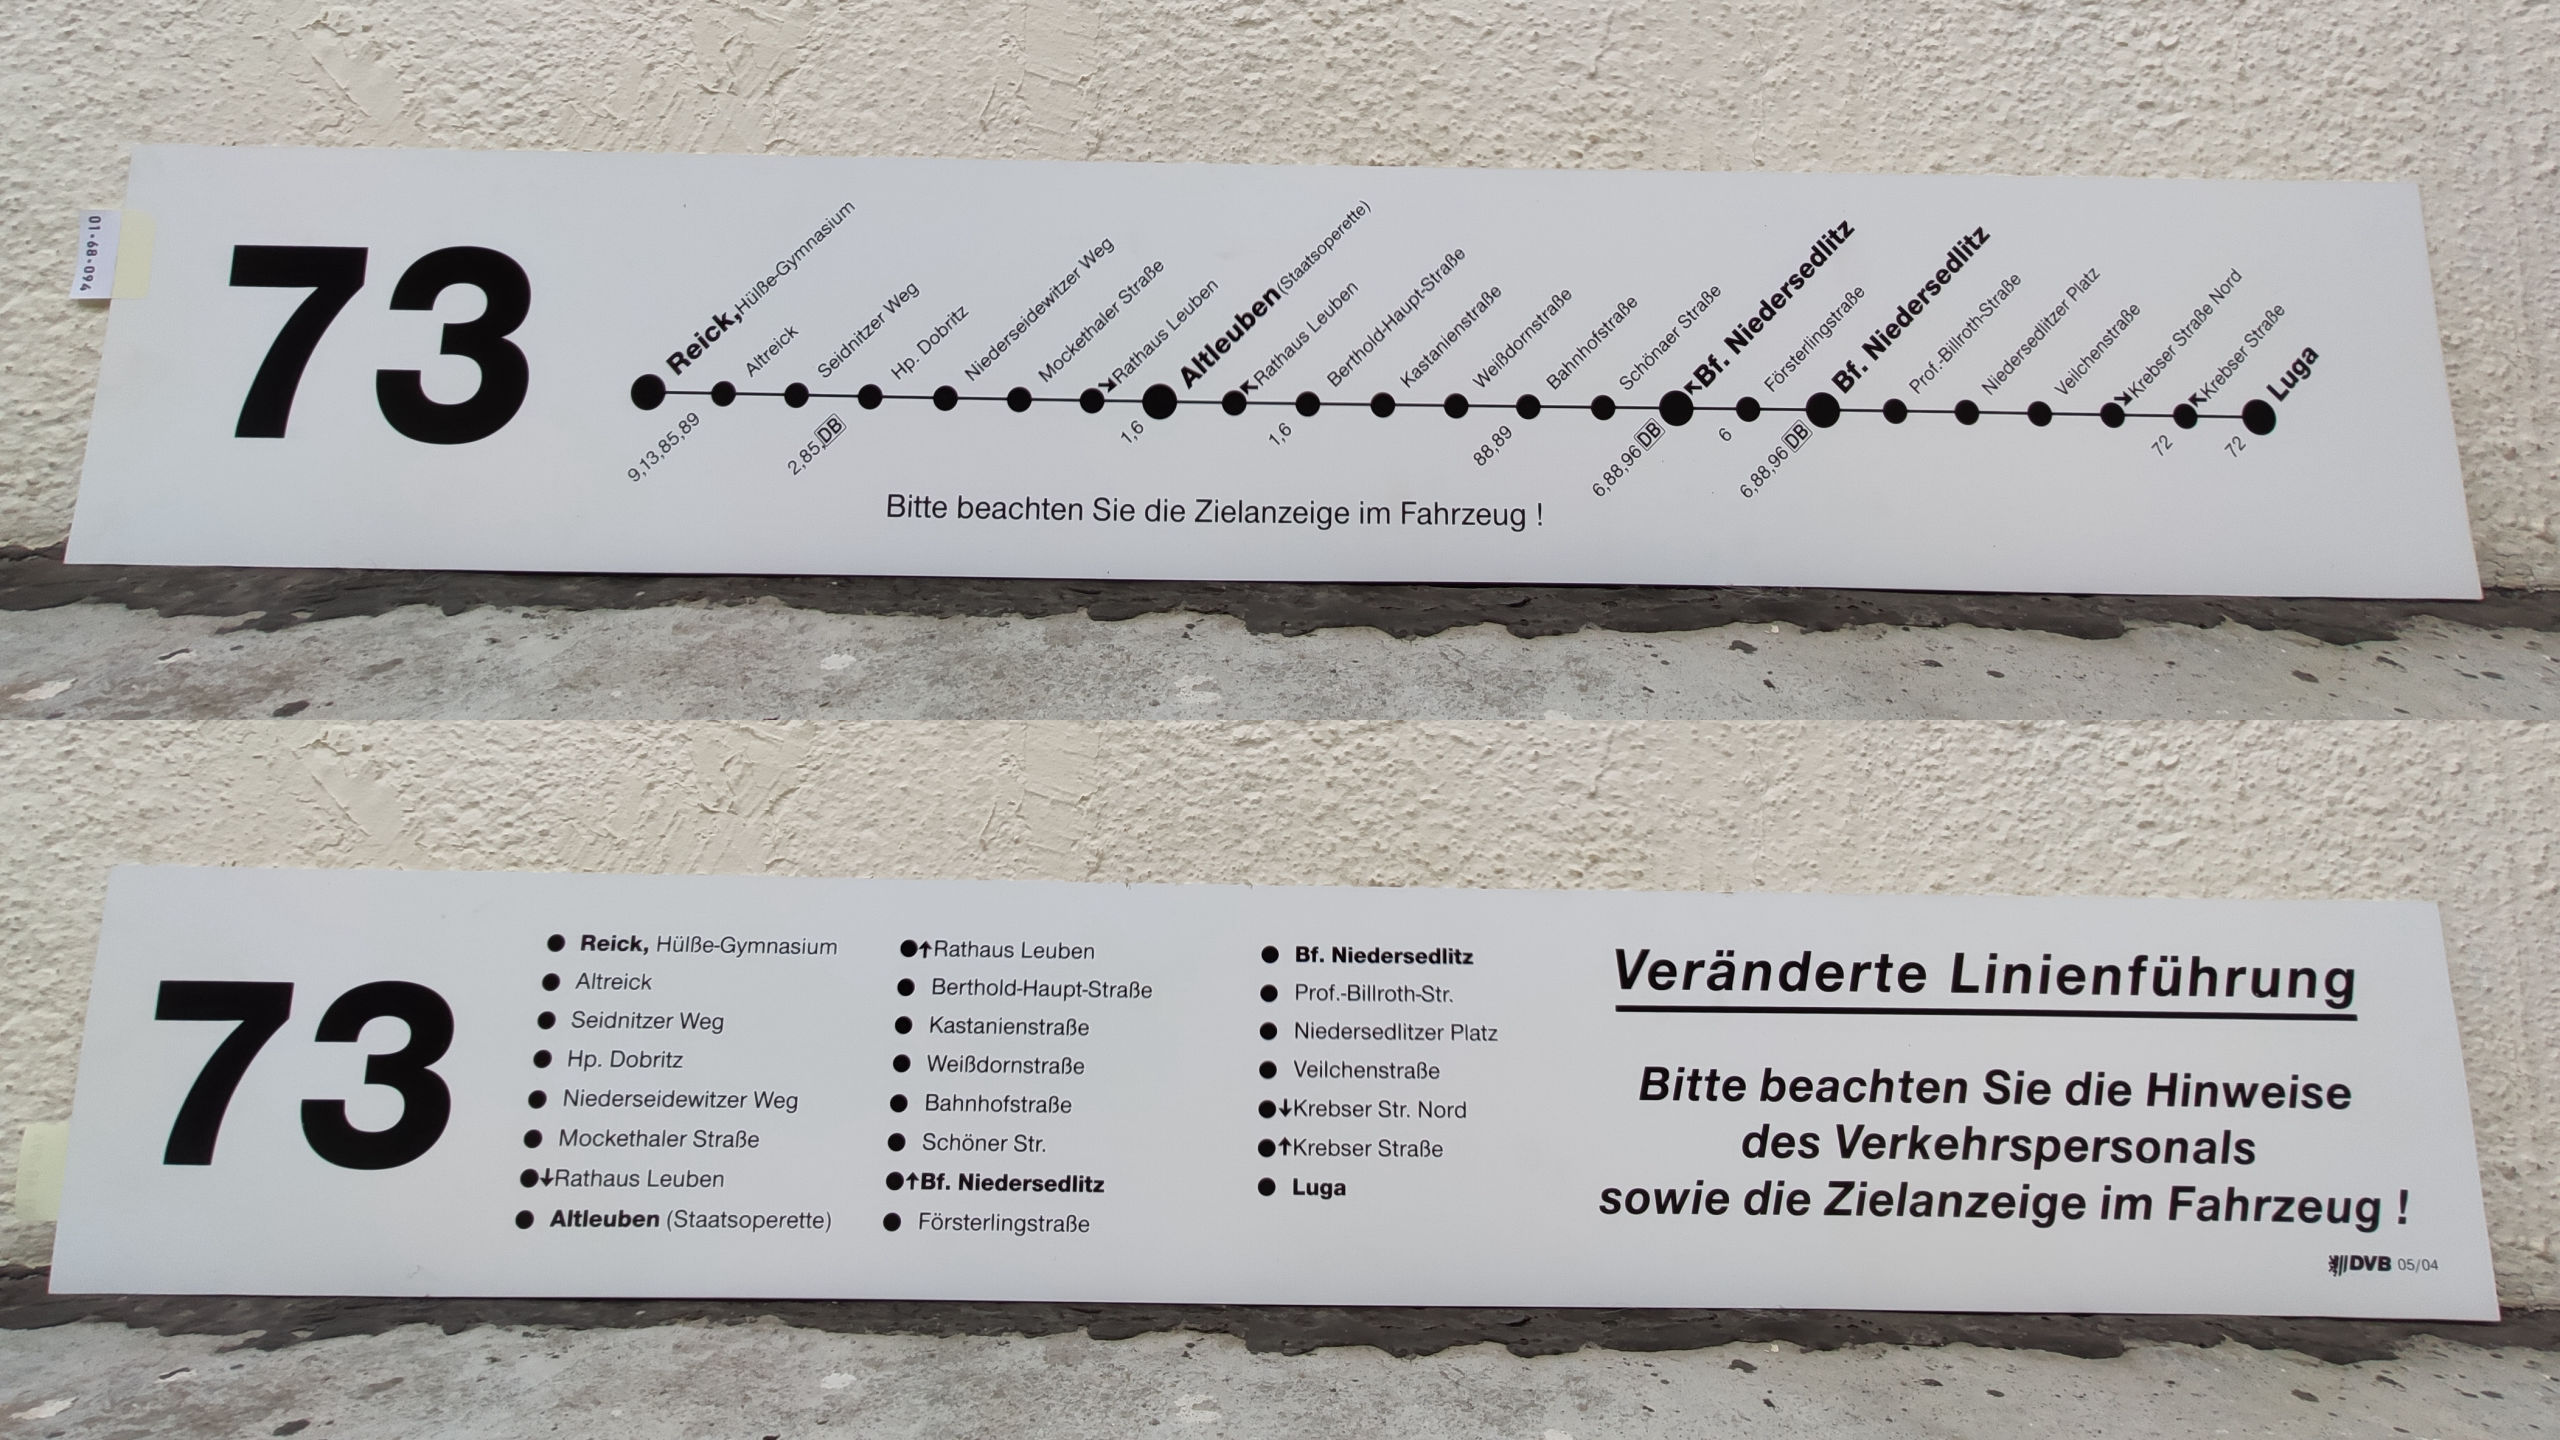 73 Reick,Hülße-Gymnasium – Altleuben(Stattsoperette) – Bf. Niedersedlitz – Bf. Niedersedlitz – Luga